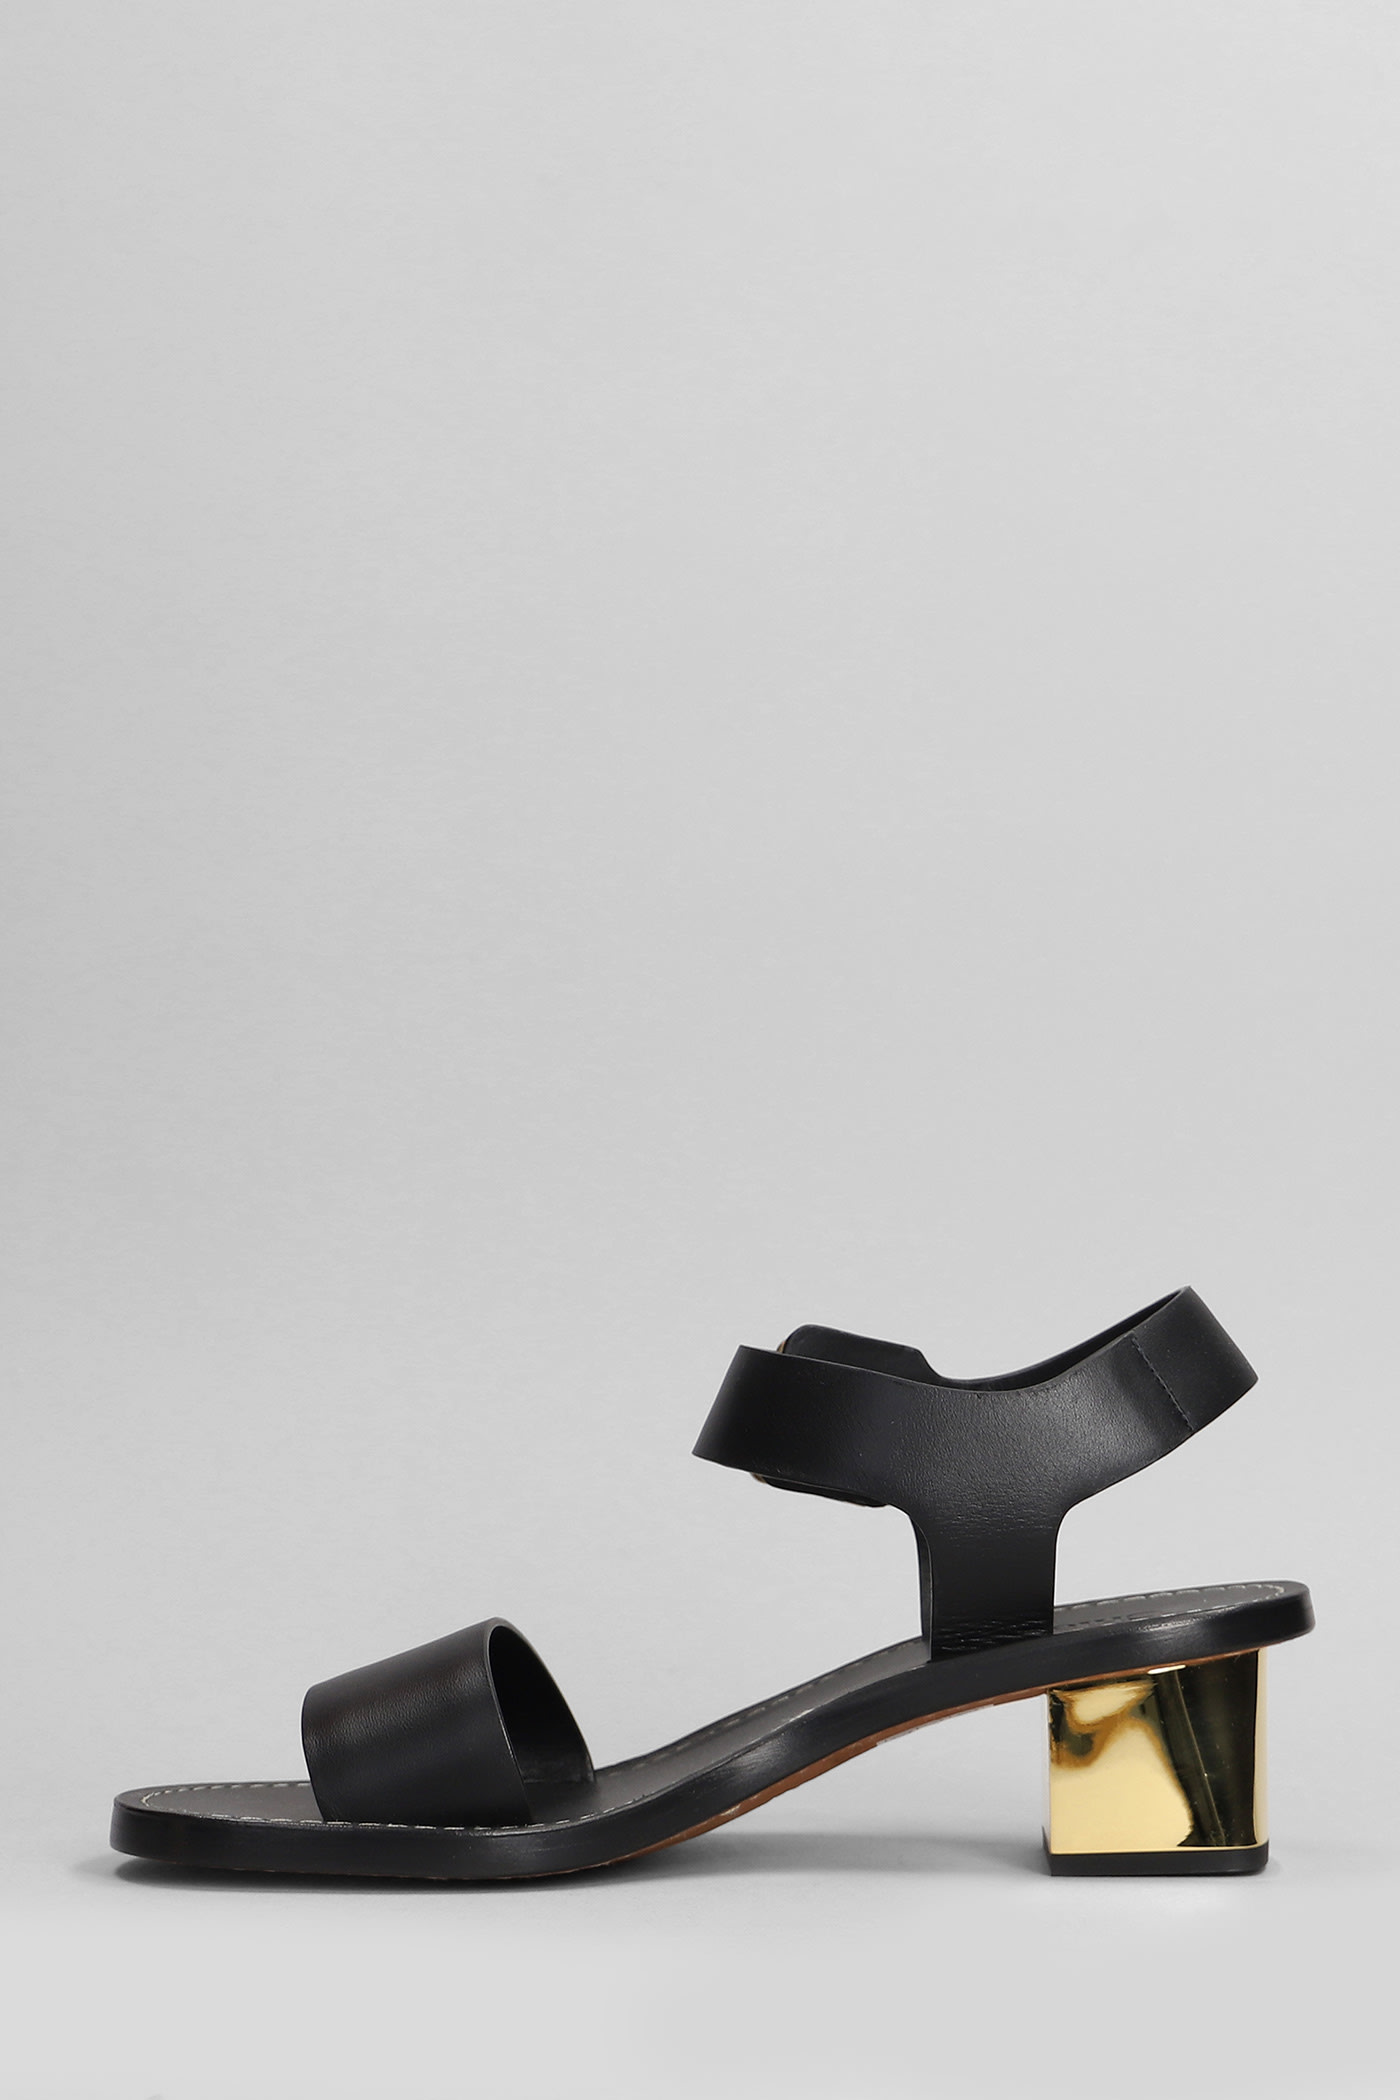 Shop Chloé Rebecca Sandals In Black Leather